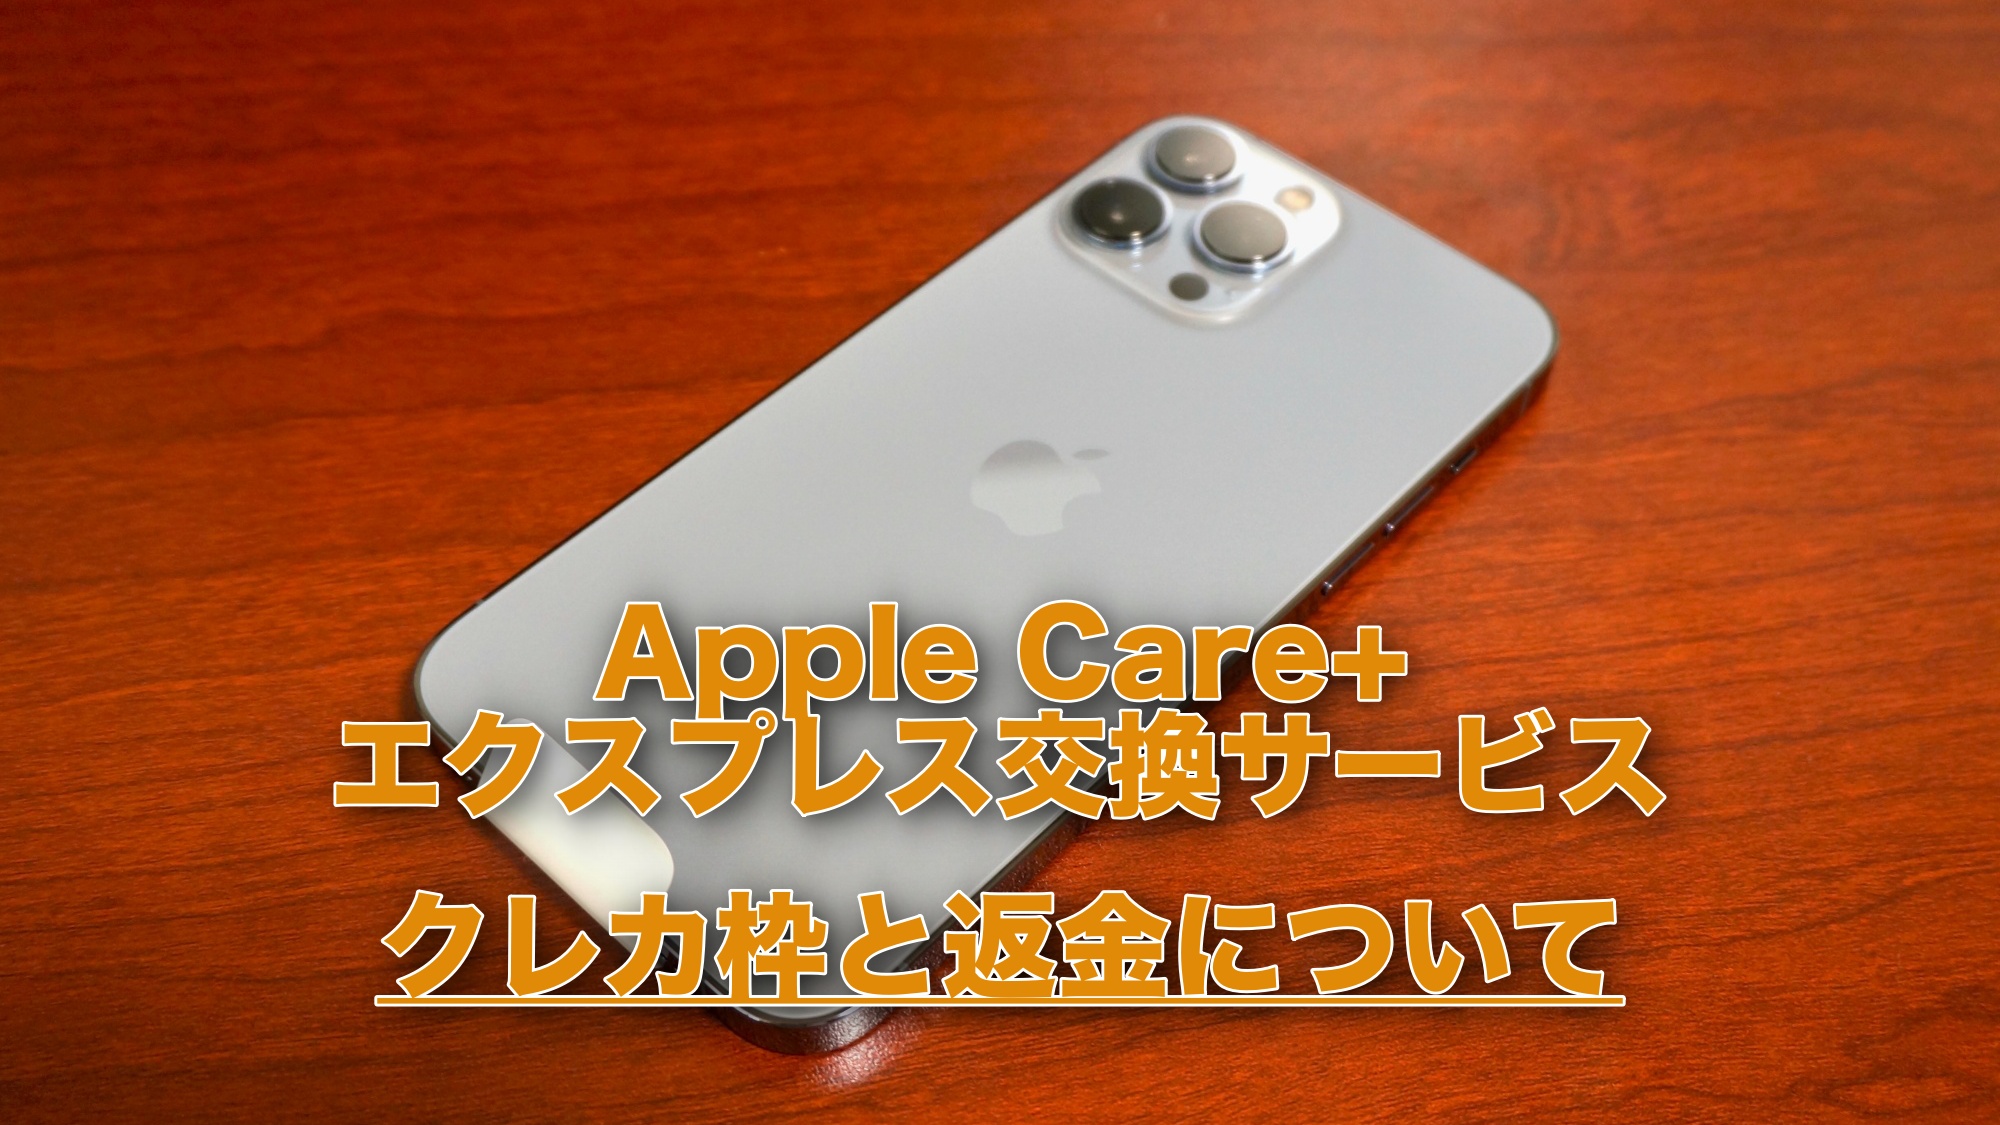 Apple Care+ エクスプレス交換 クレカ枠